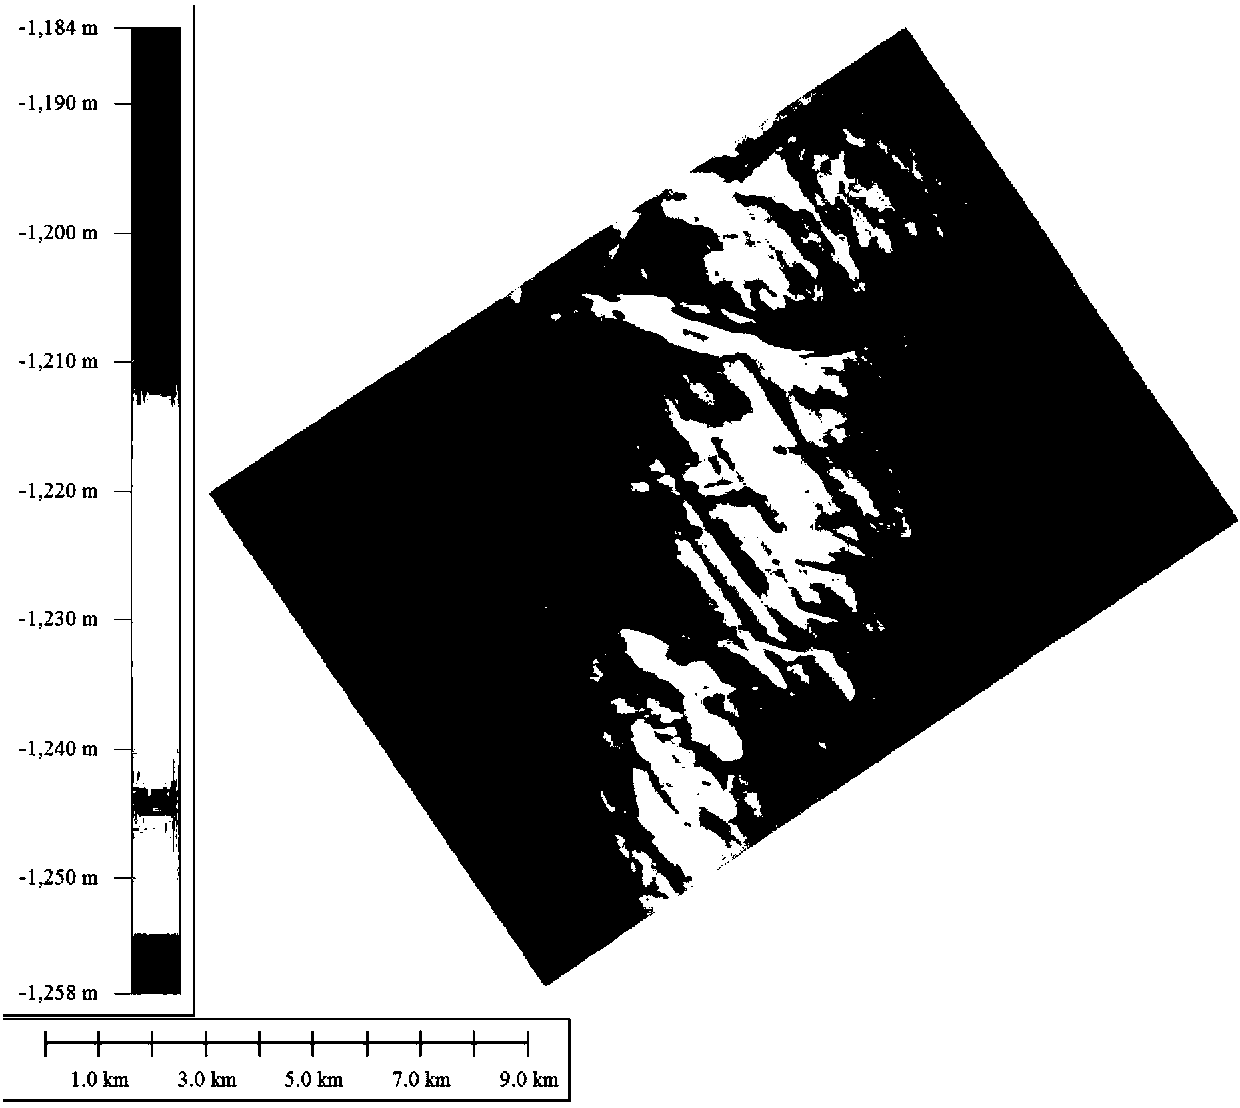 Seabed geomorphologic boundary extraction method based on OTSU algorithm